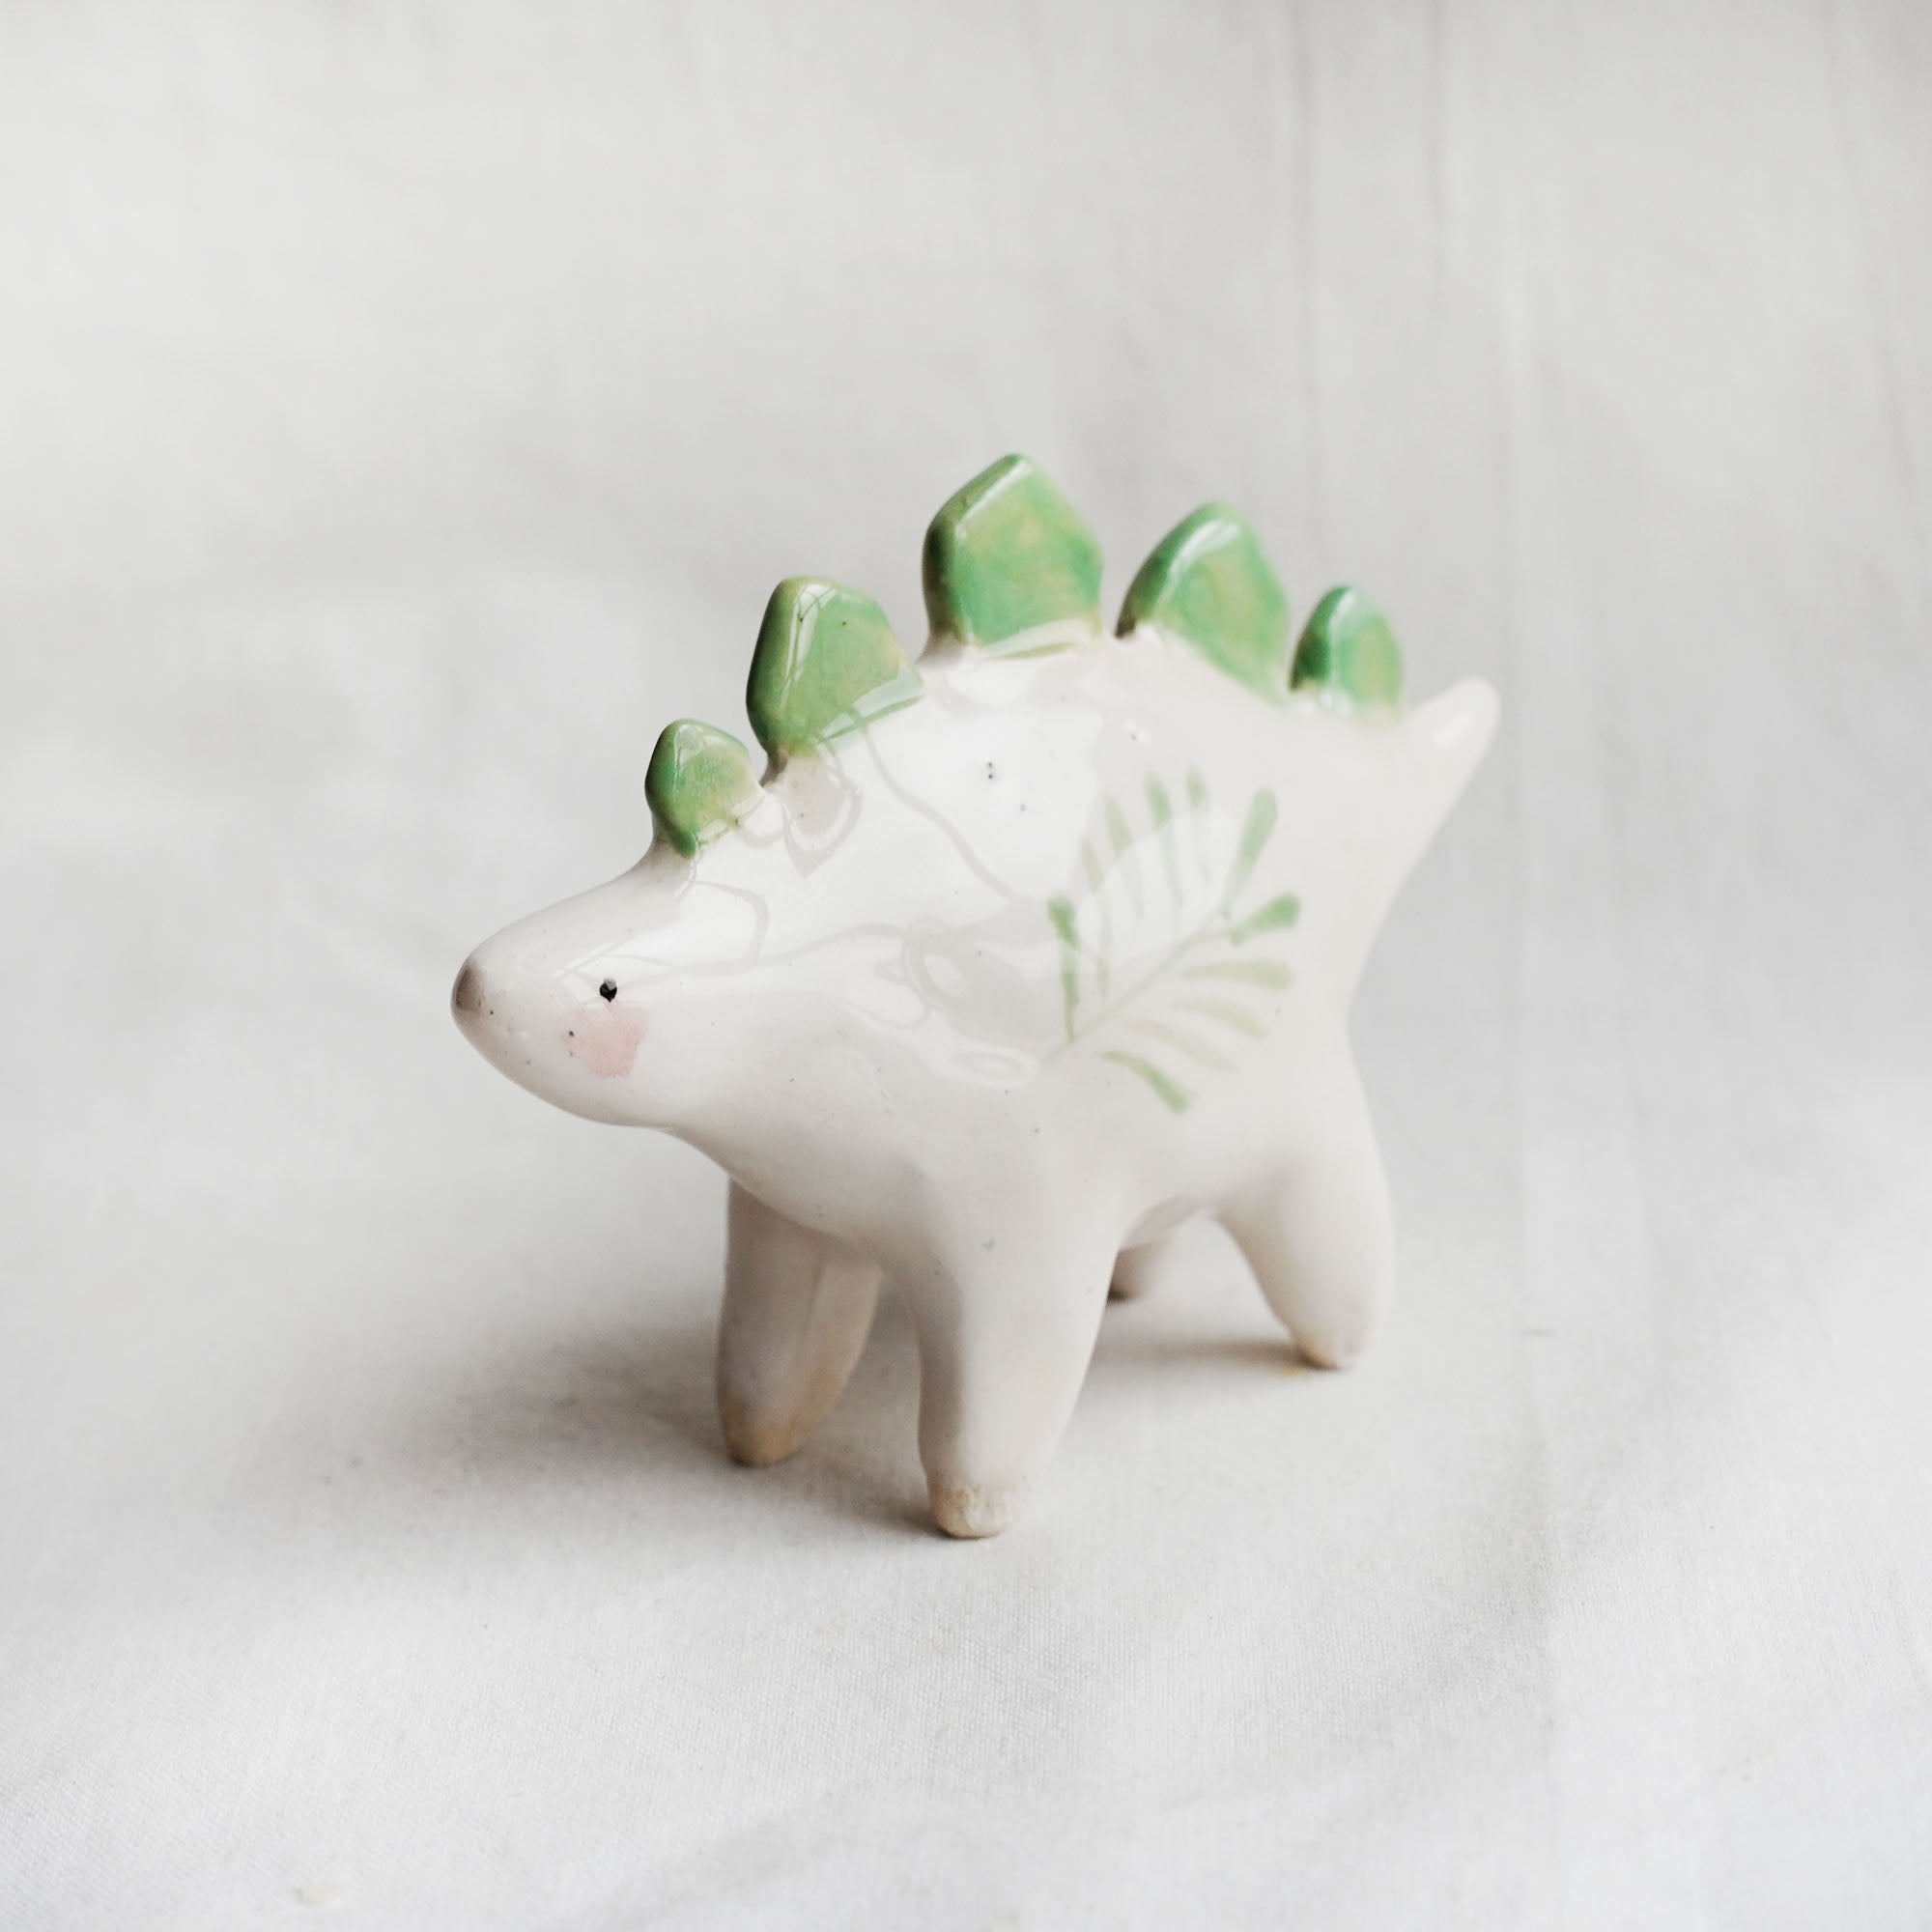 Ceramic stegosaurus figurine